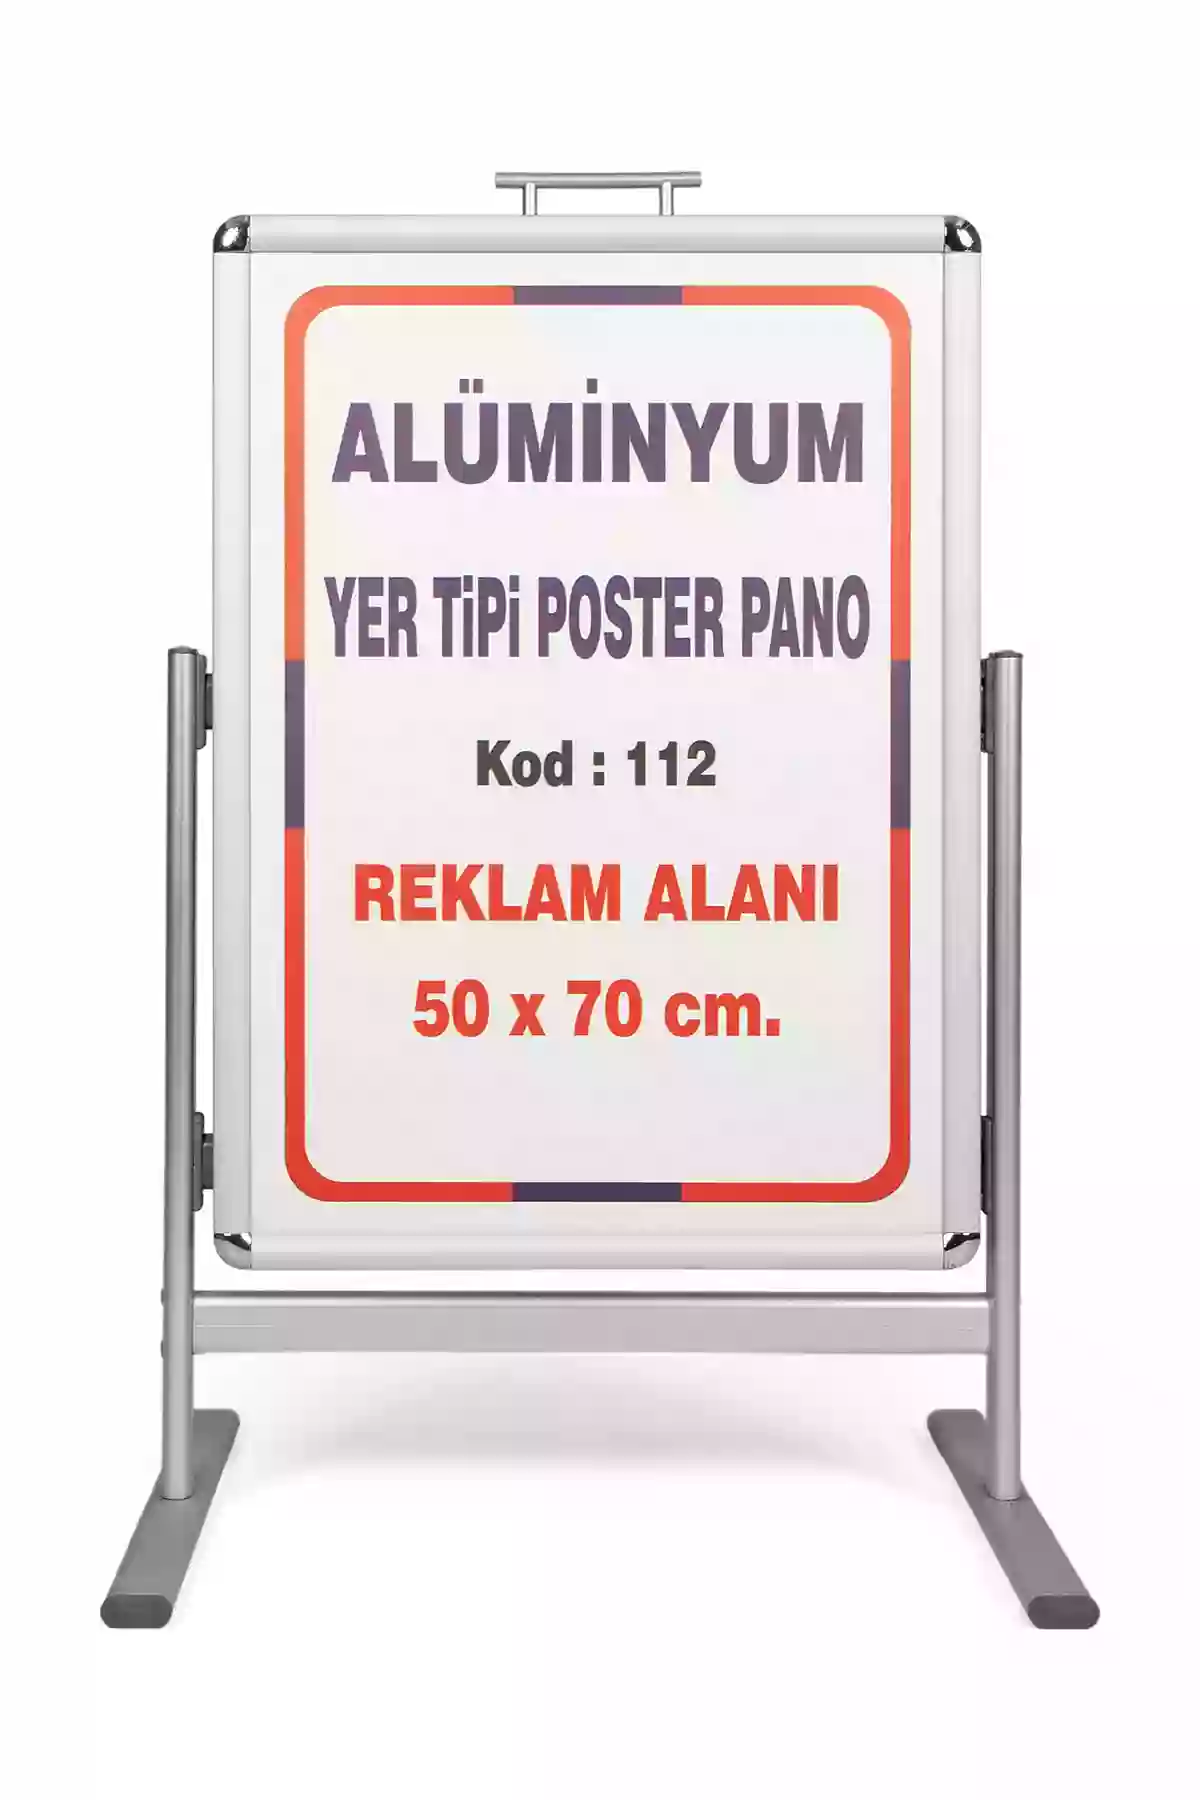 Alüminyum Üründür

Reklam Alanı : 50x70